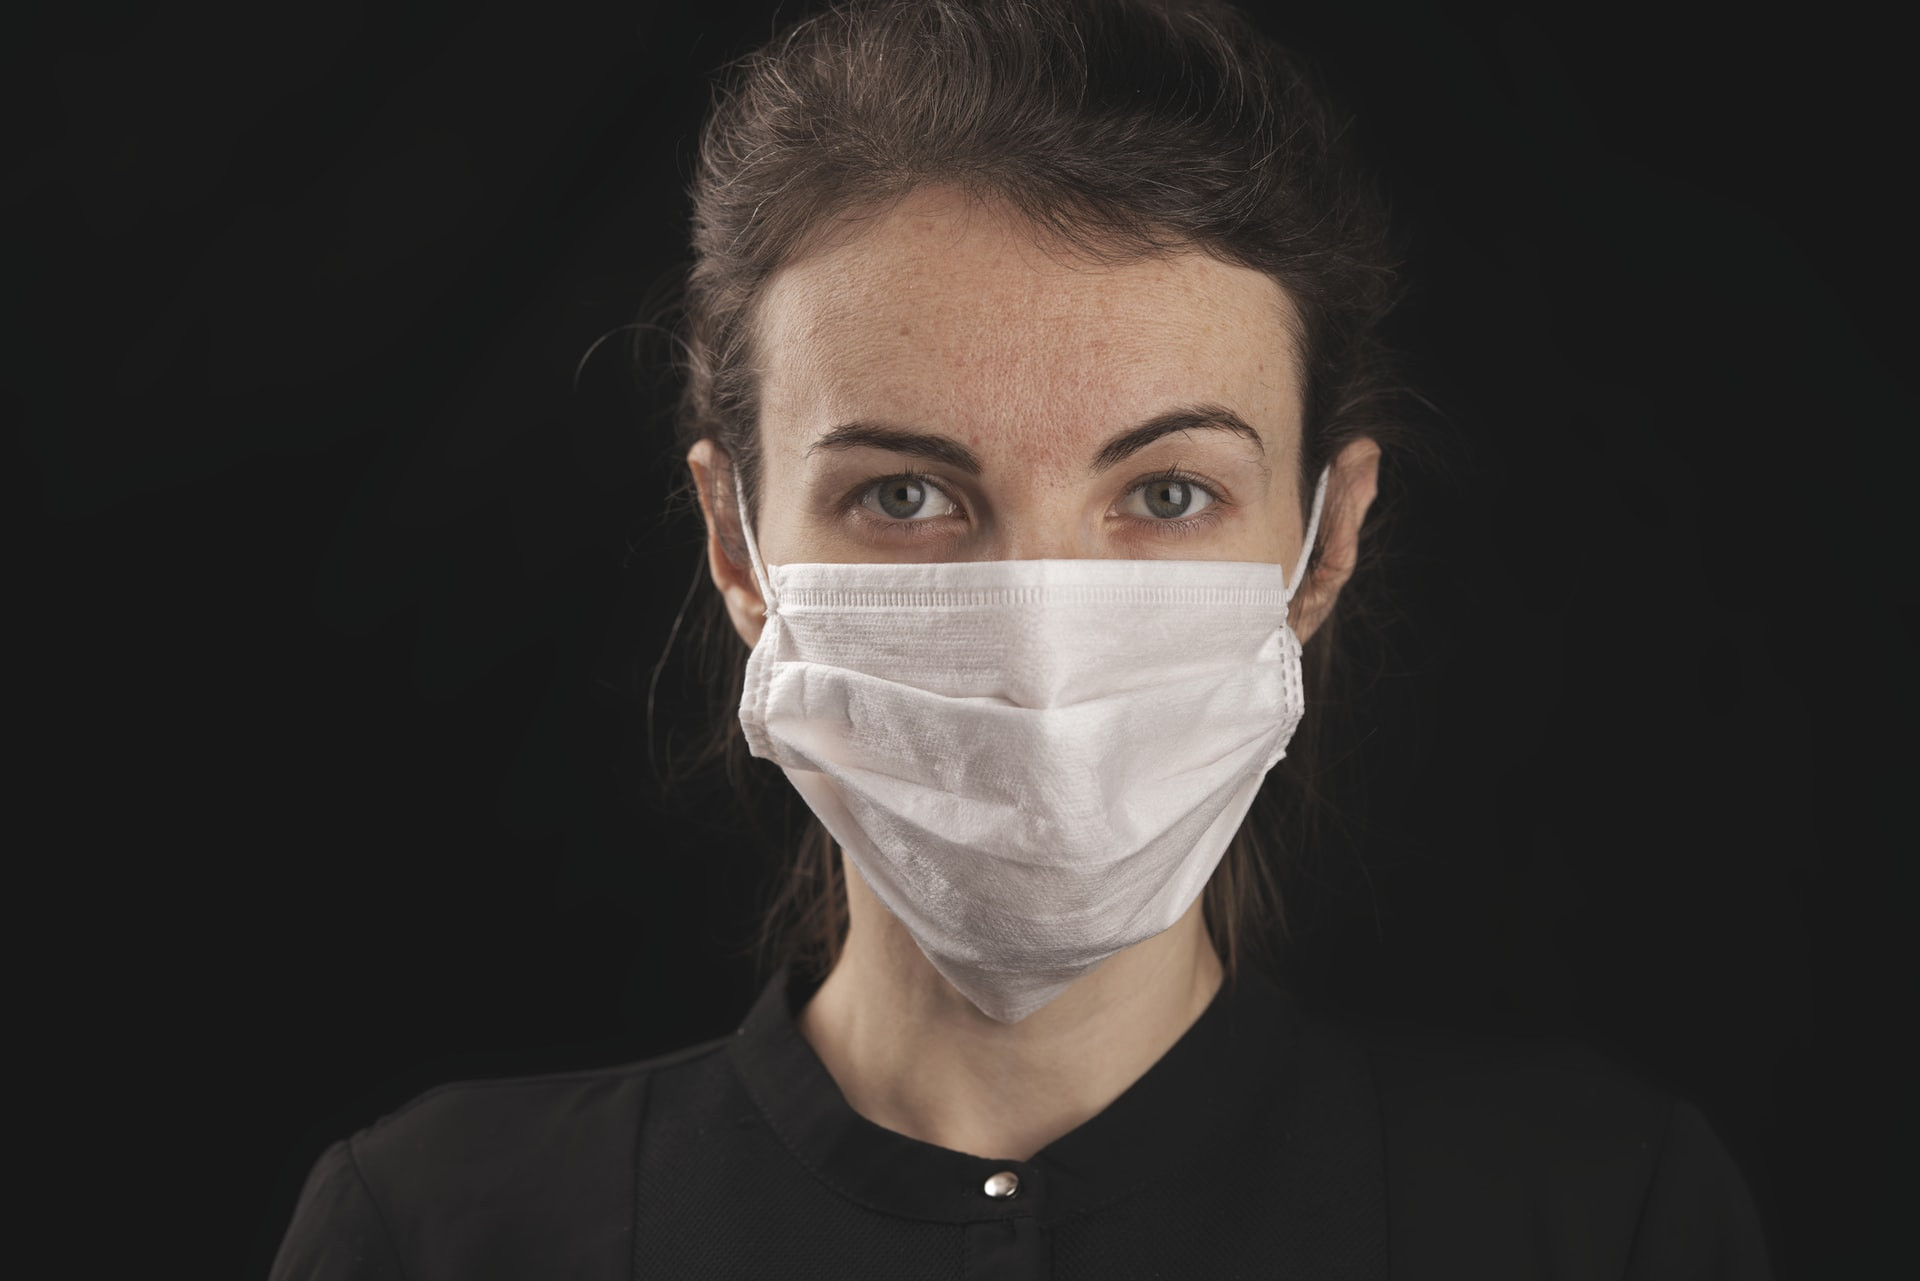 Upoštevanje enostavnih higienskih zaščitnih ukrepov nas ščiti pred respiratornimi virusi in le skupaj jih lahko premagamo.